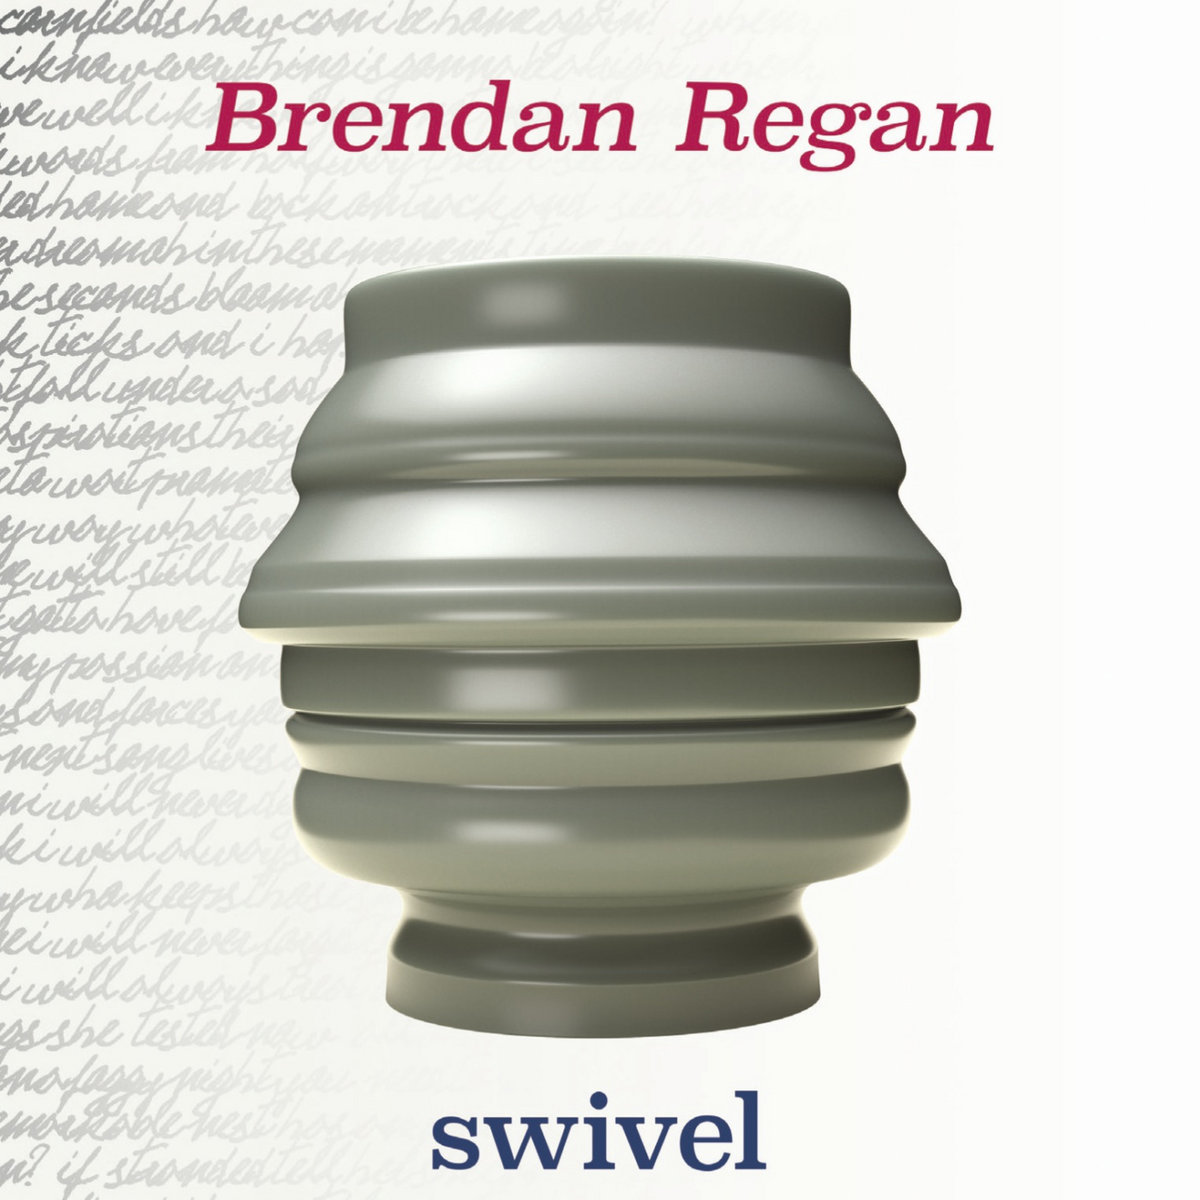 swivel Brendan Regan